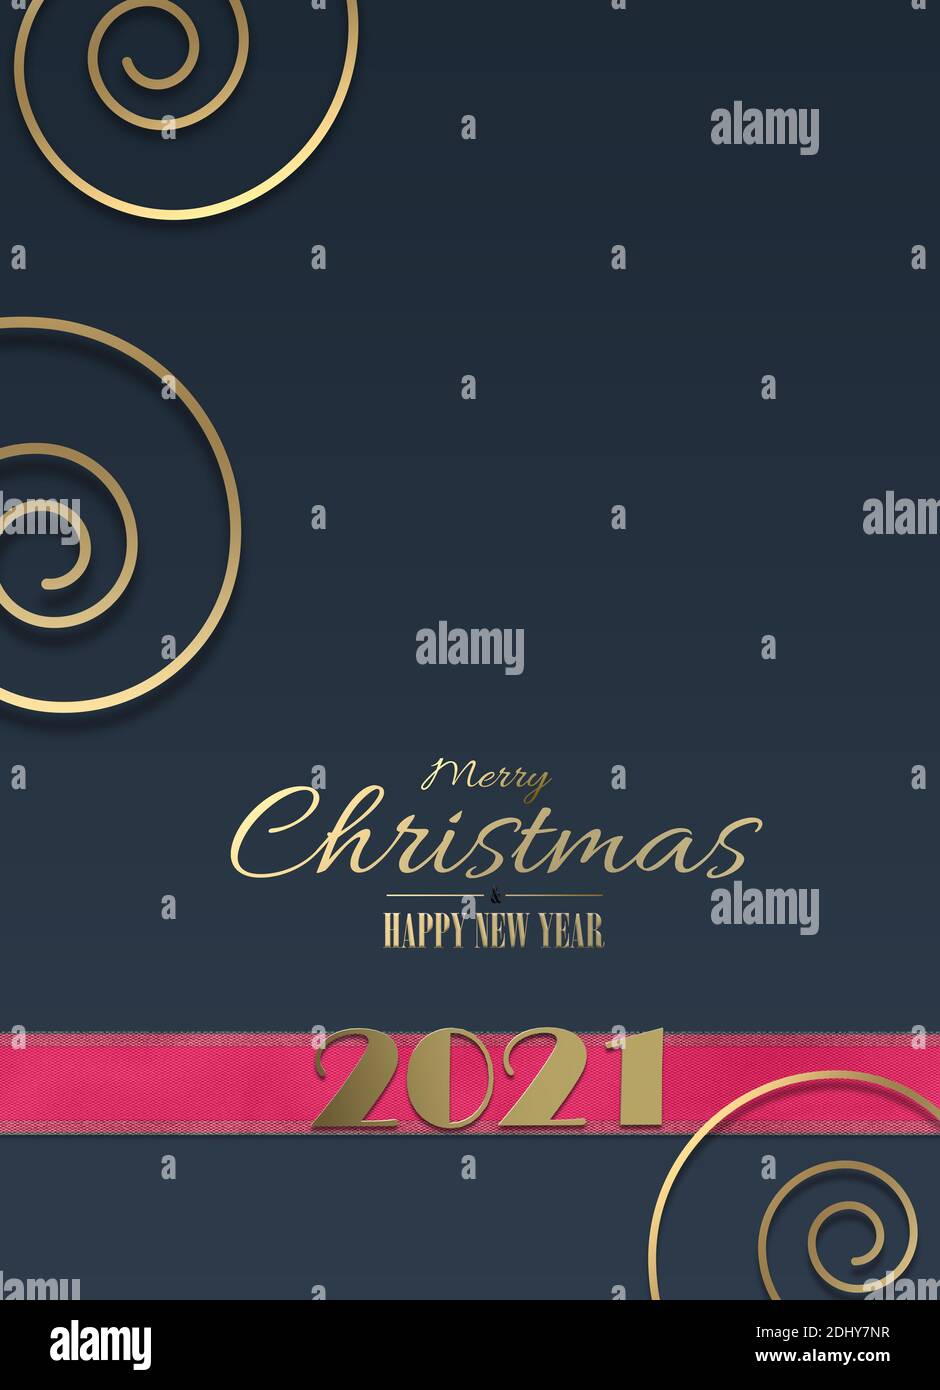 Décoration de Noël élégante en or bleu. Ruban rose avec or brillant chiffre 2021, texte doré avec voeux de Noël, spirale dorée sur bleu foncé backgro Banque D'Images